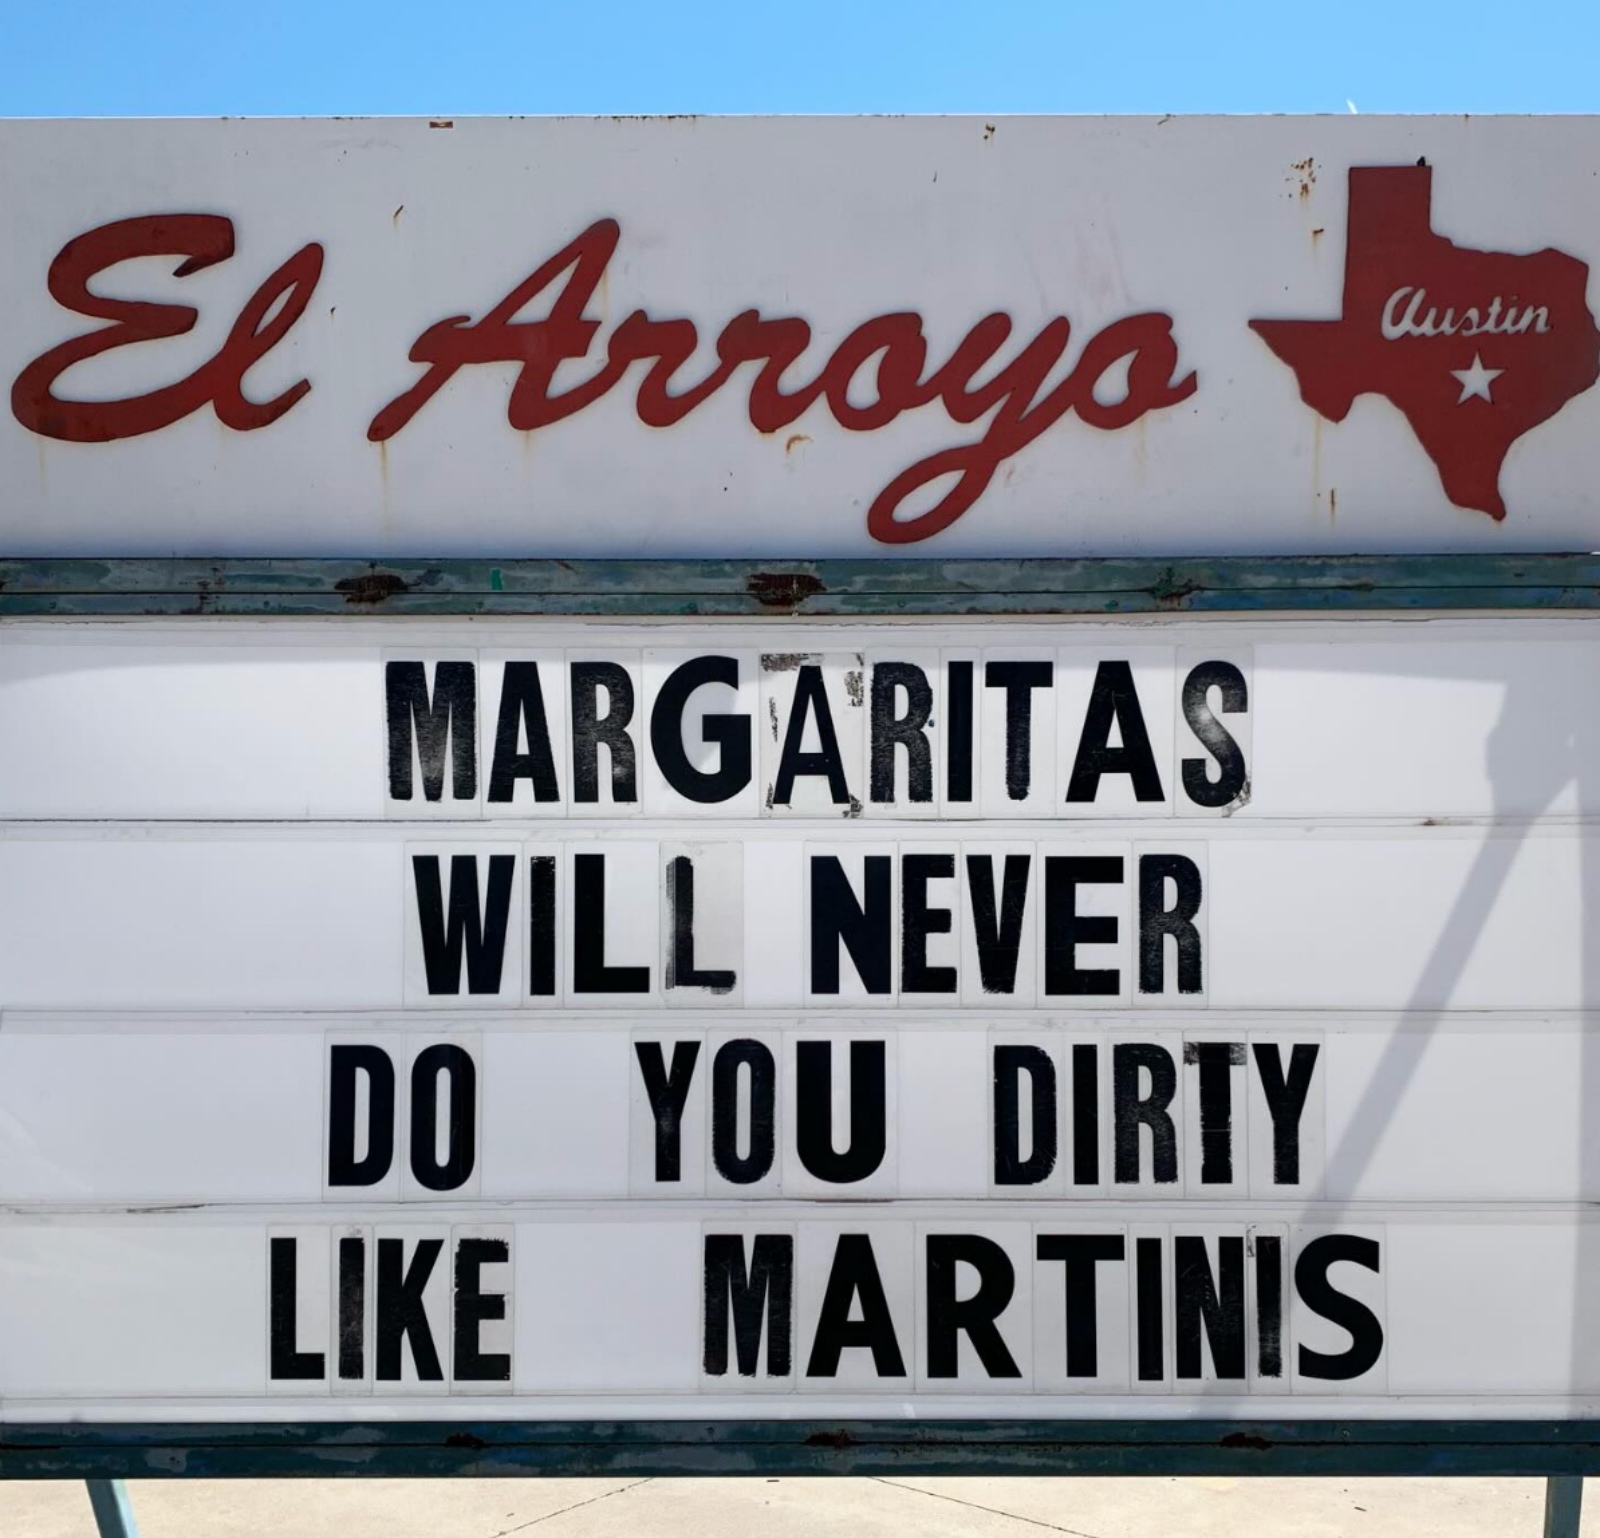 meme about margaritas vs martinis